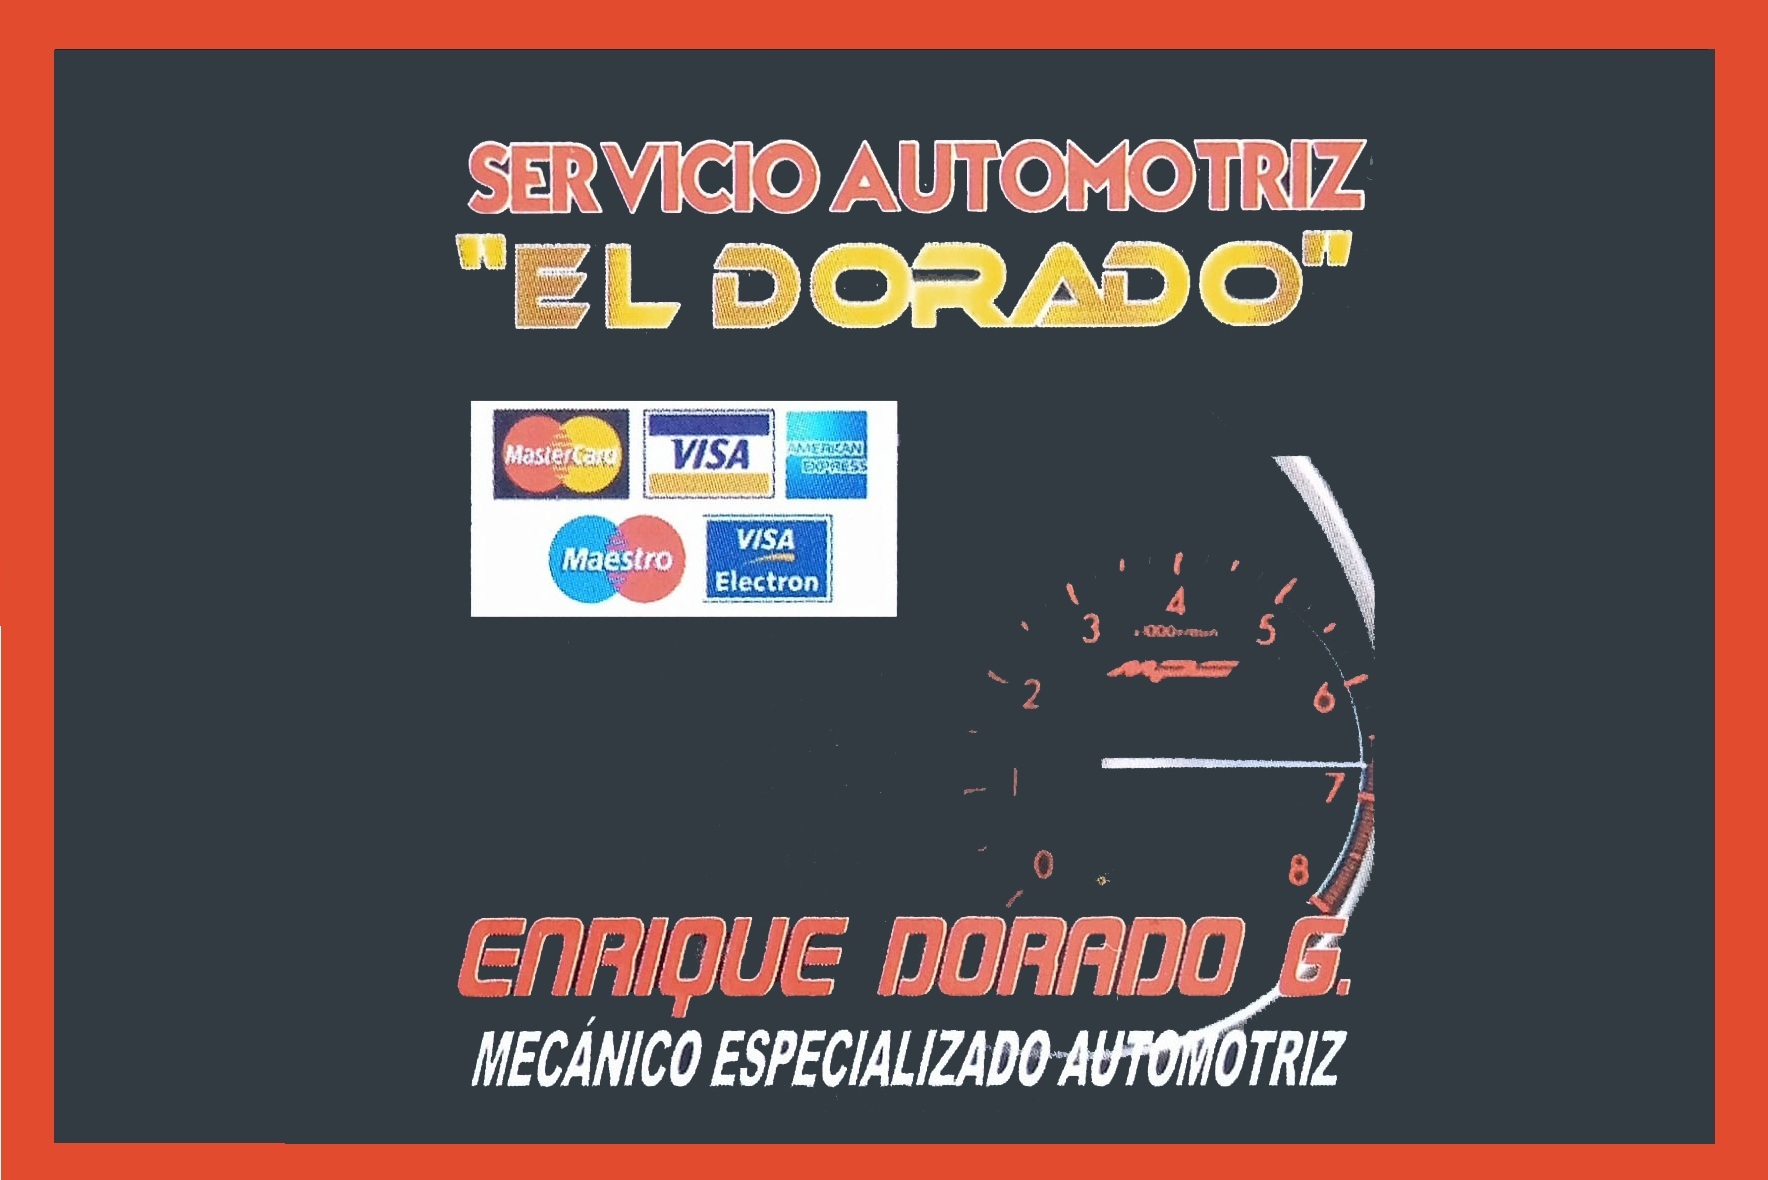 SERVICIO-AUTOMOTRIZ-EL-DORADOI-L-1.jpg